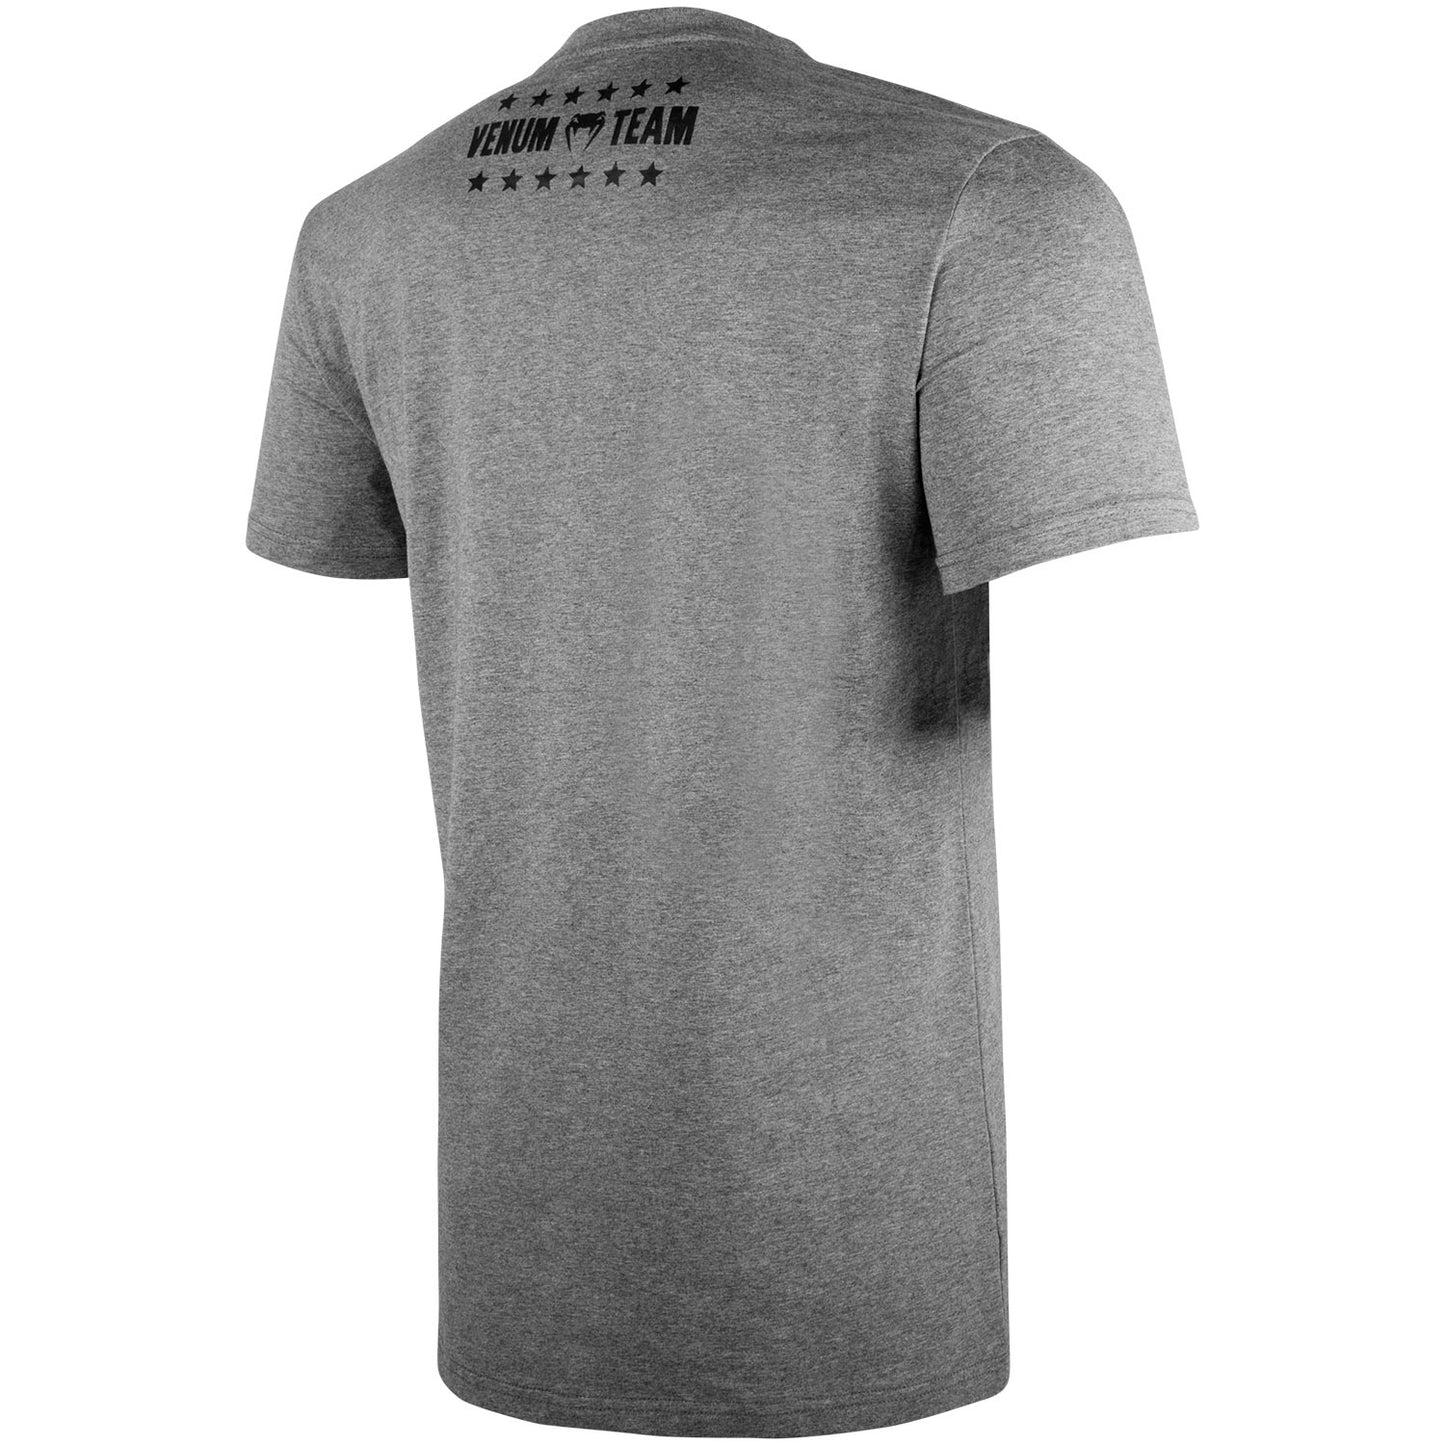 Venum Box-Origins-T-Shirt - Heidegrau